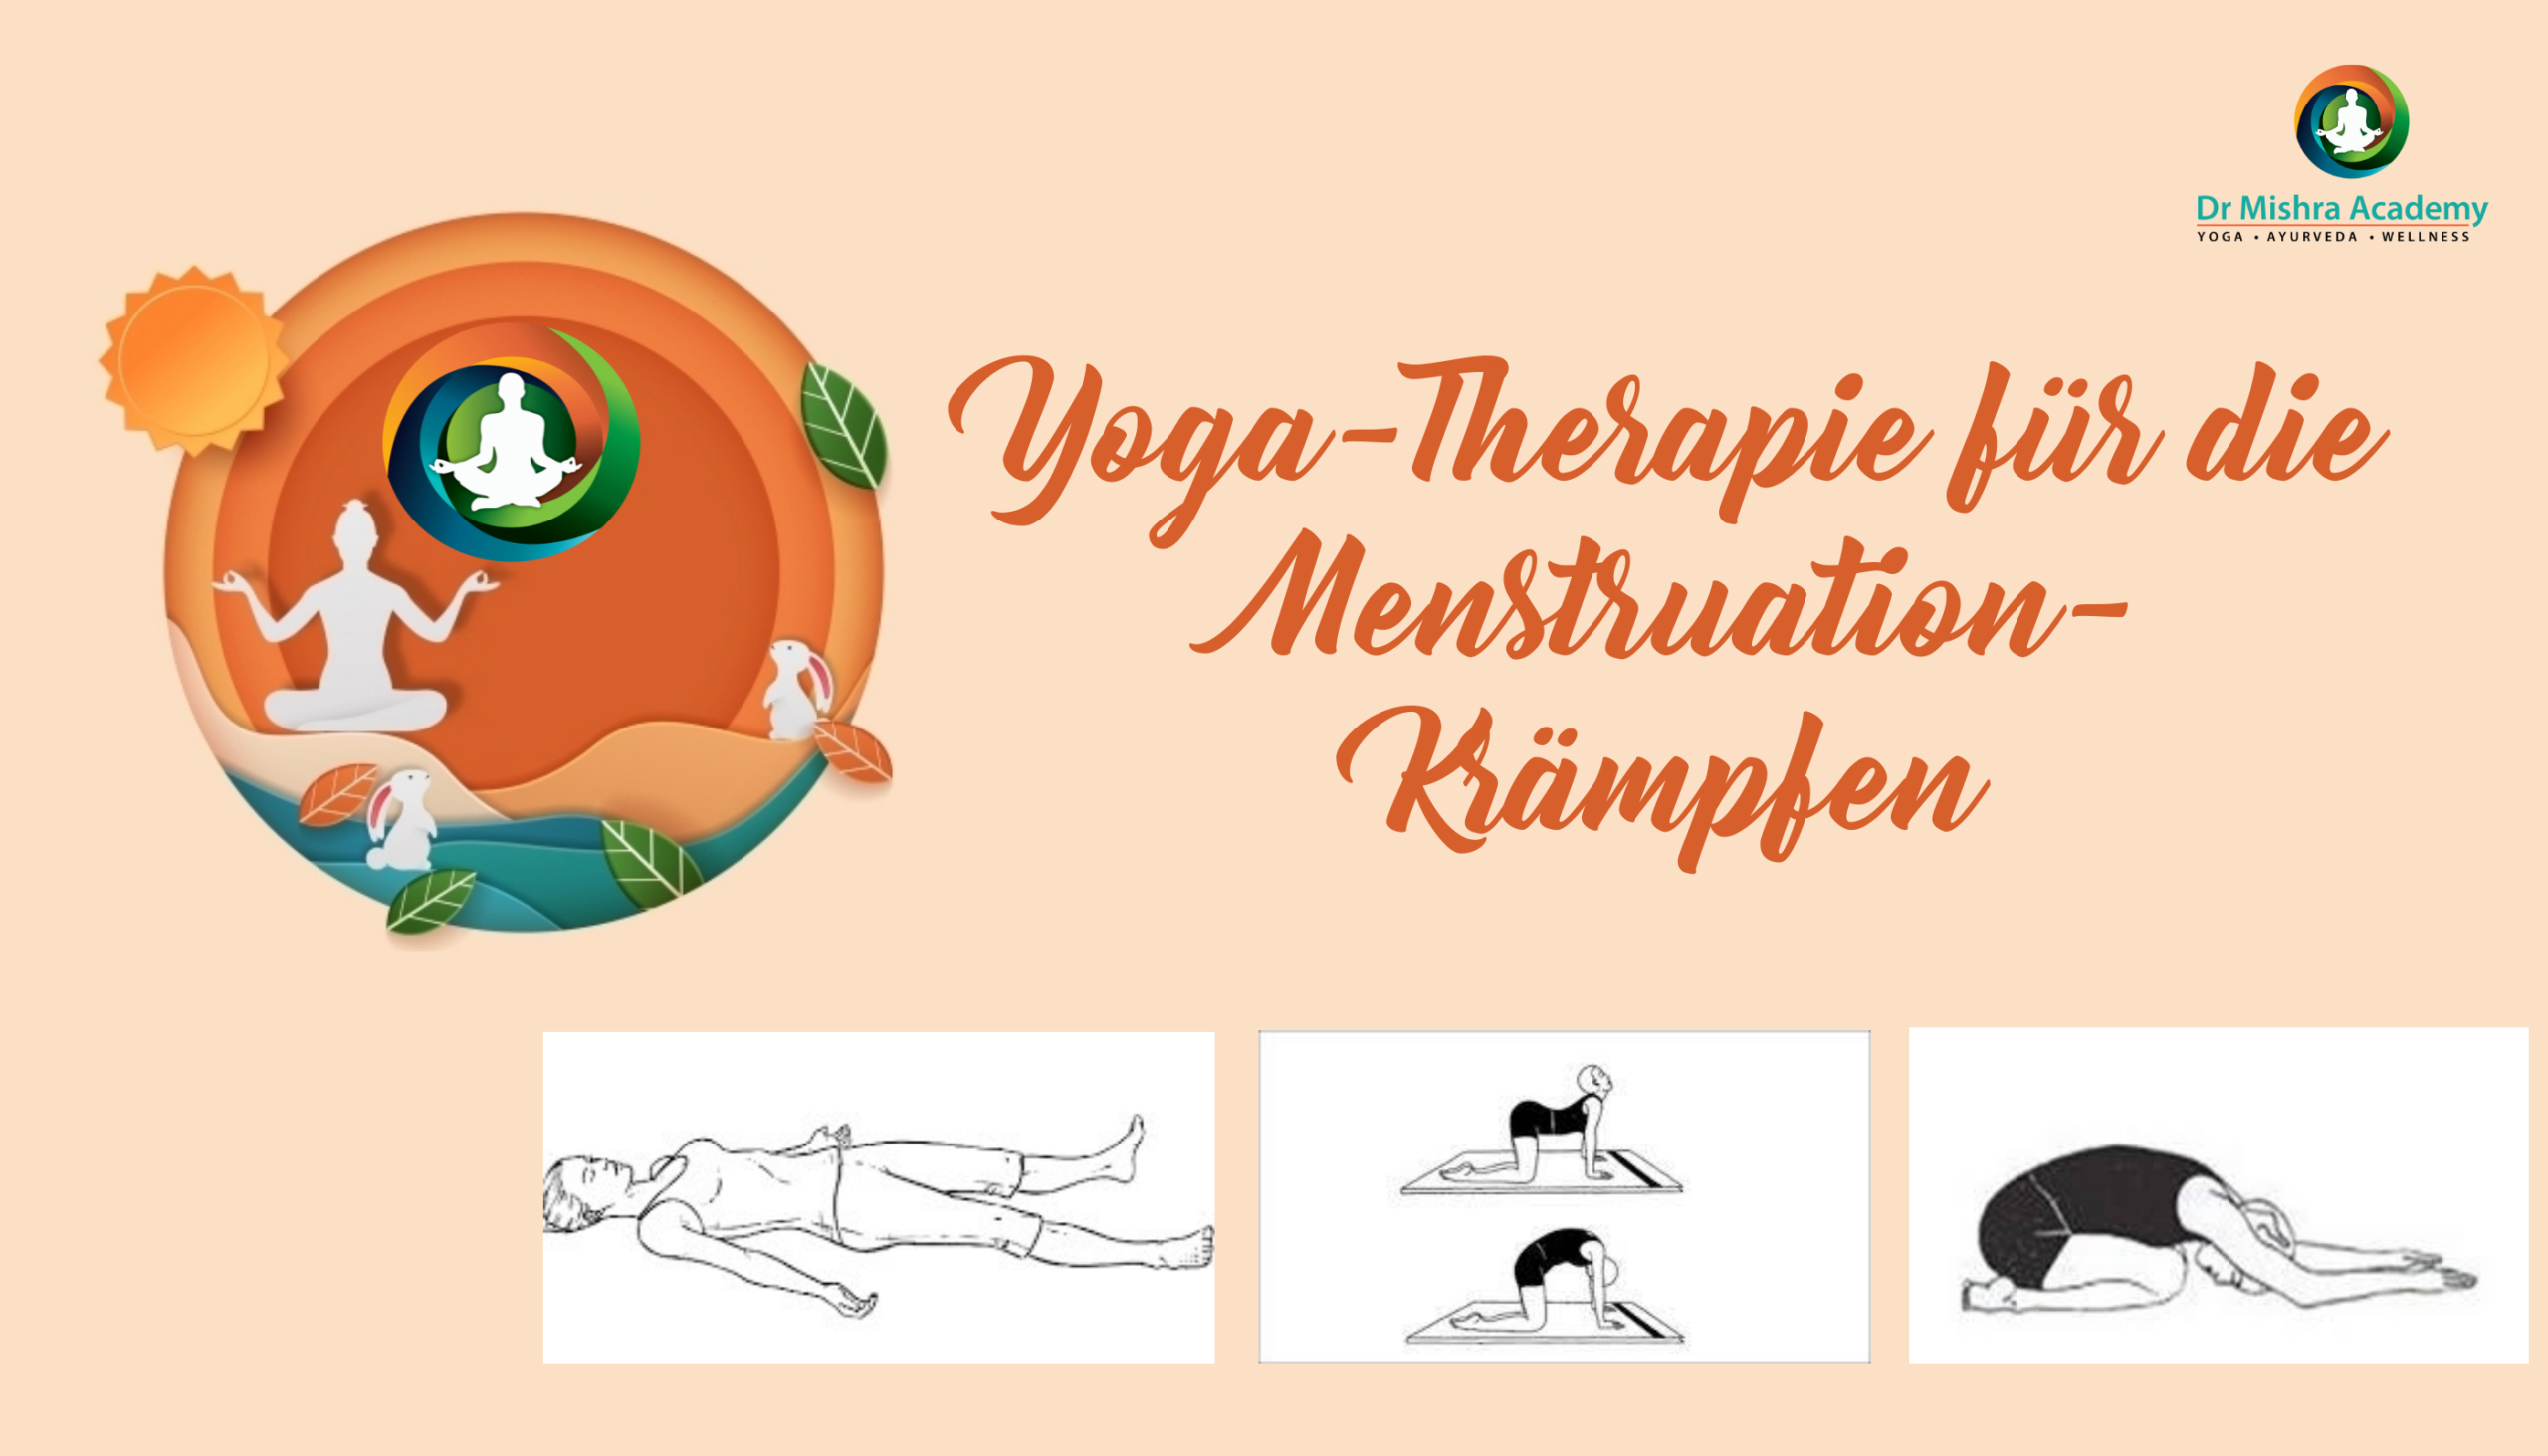 Yoga-Therapie für die Menstruation- Krämpfen